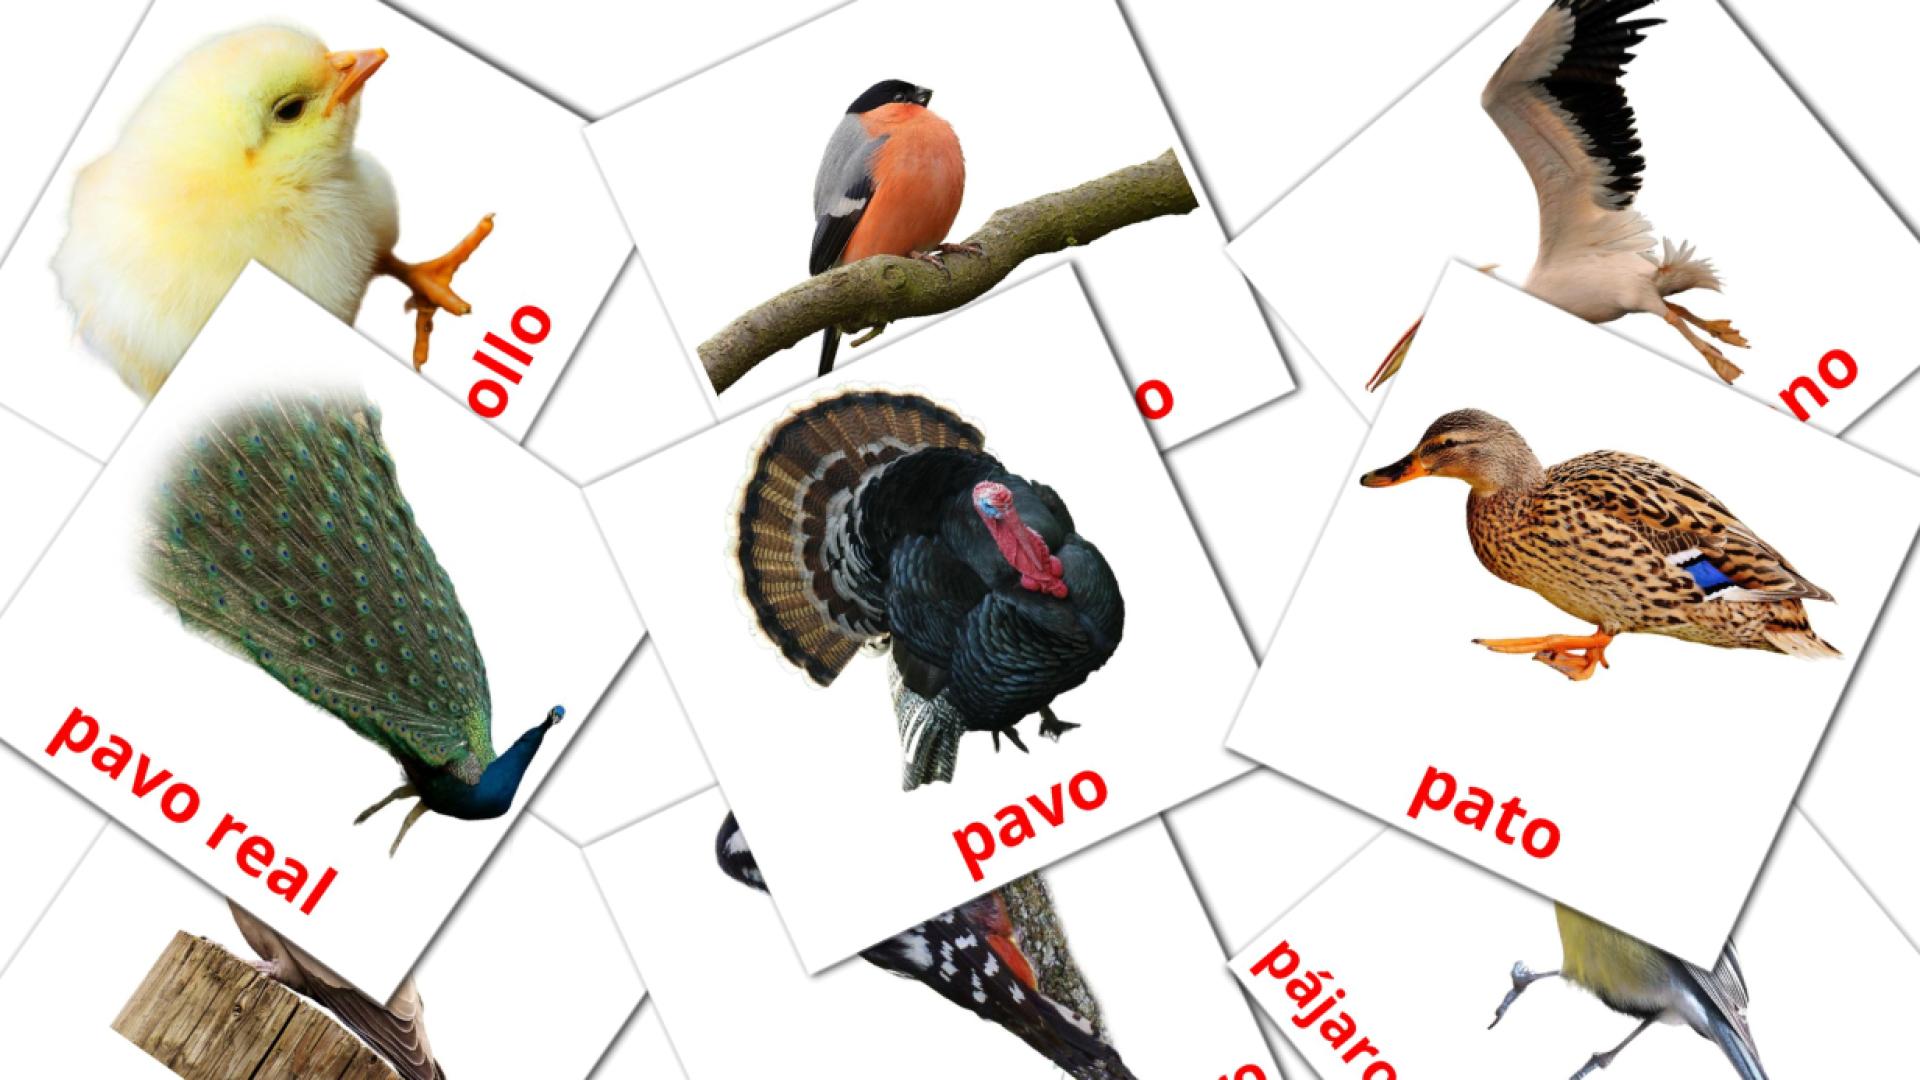 malayalam tarjetas de vocabulario en Aves